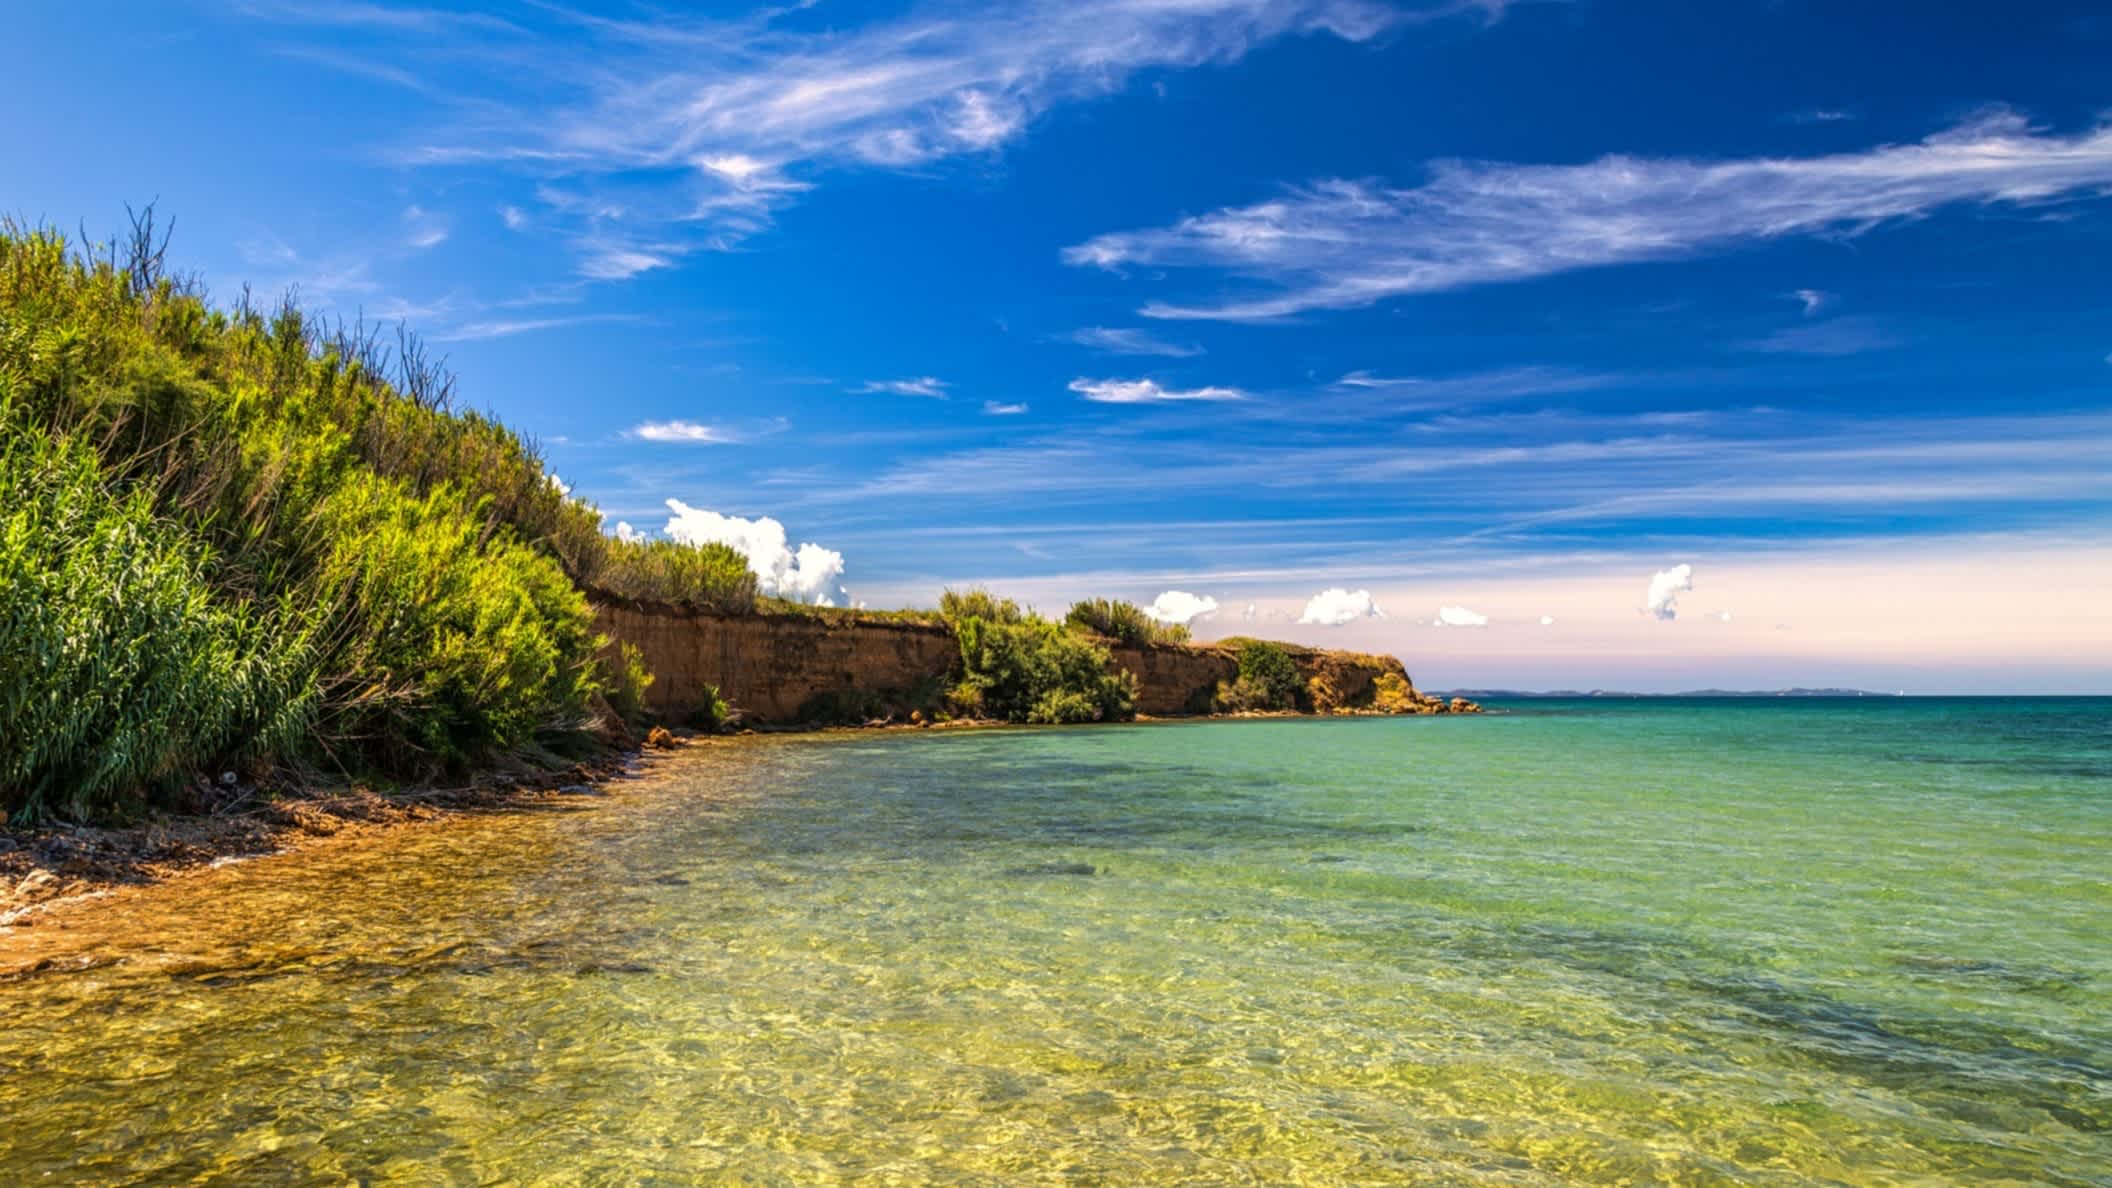 Der Strand auf Privlaka, Kroatien mit Blick auf das Wasser und eine Mauer am Strand mit natürlicher Vegetation.